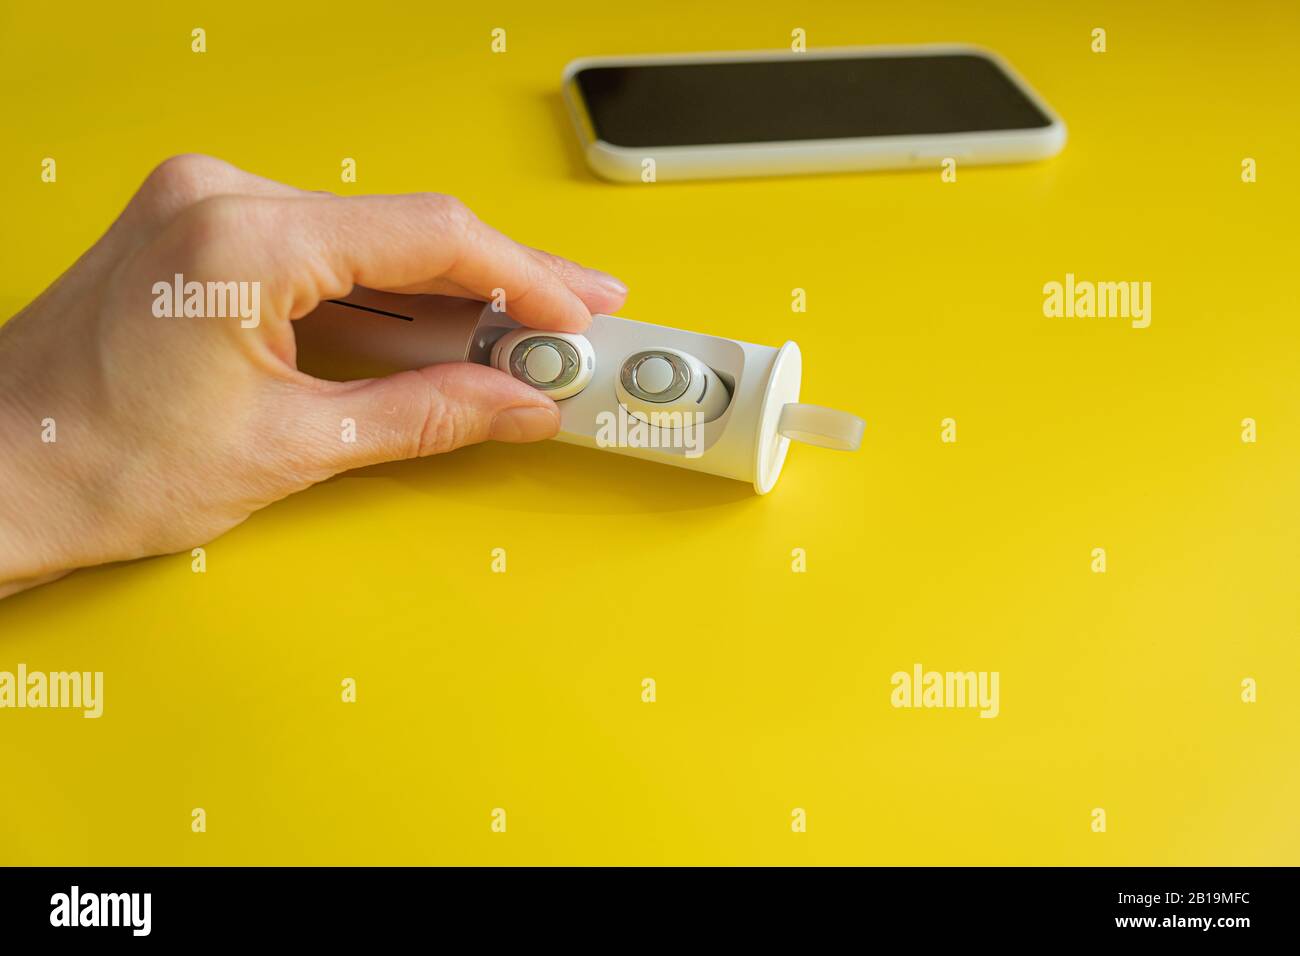 Cuffie wireless bianche per smartphone su sfondo giallo brillante, concetto di minimalismo Foto Stock